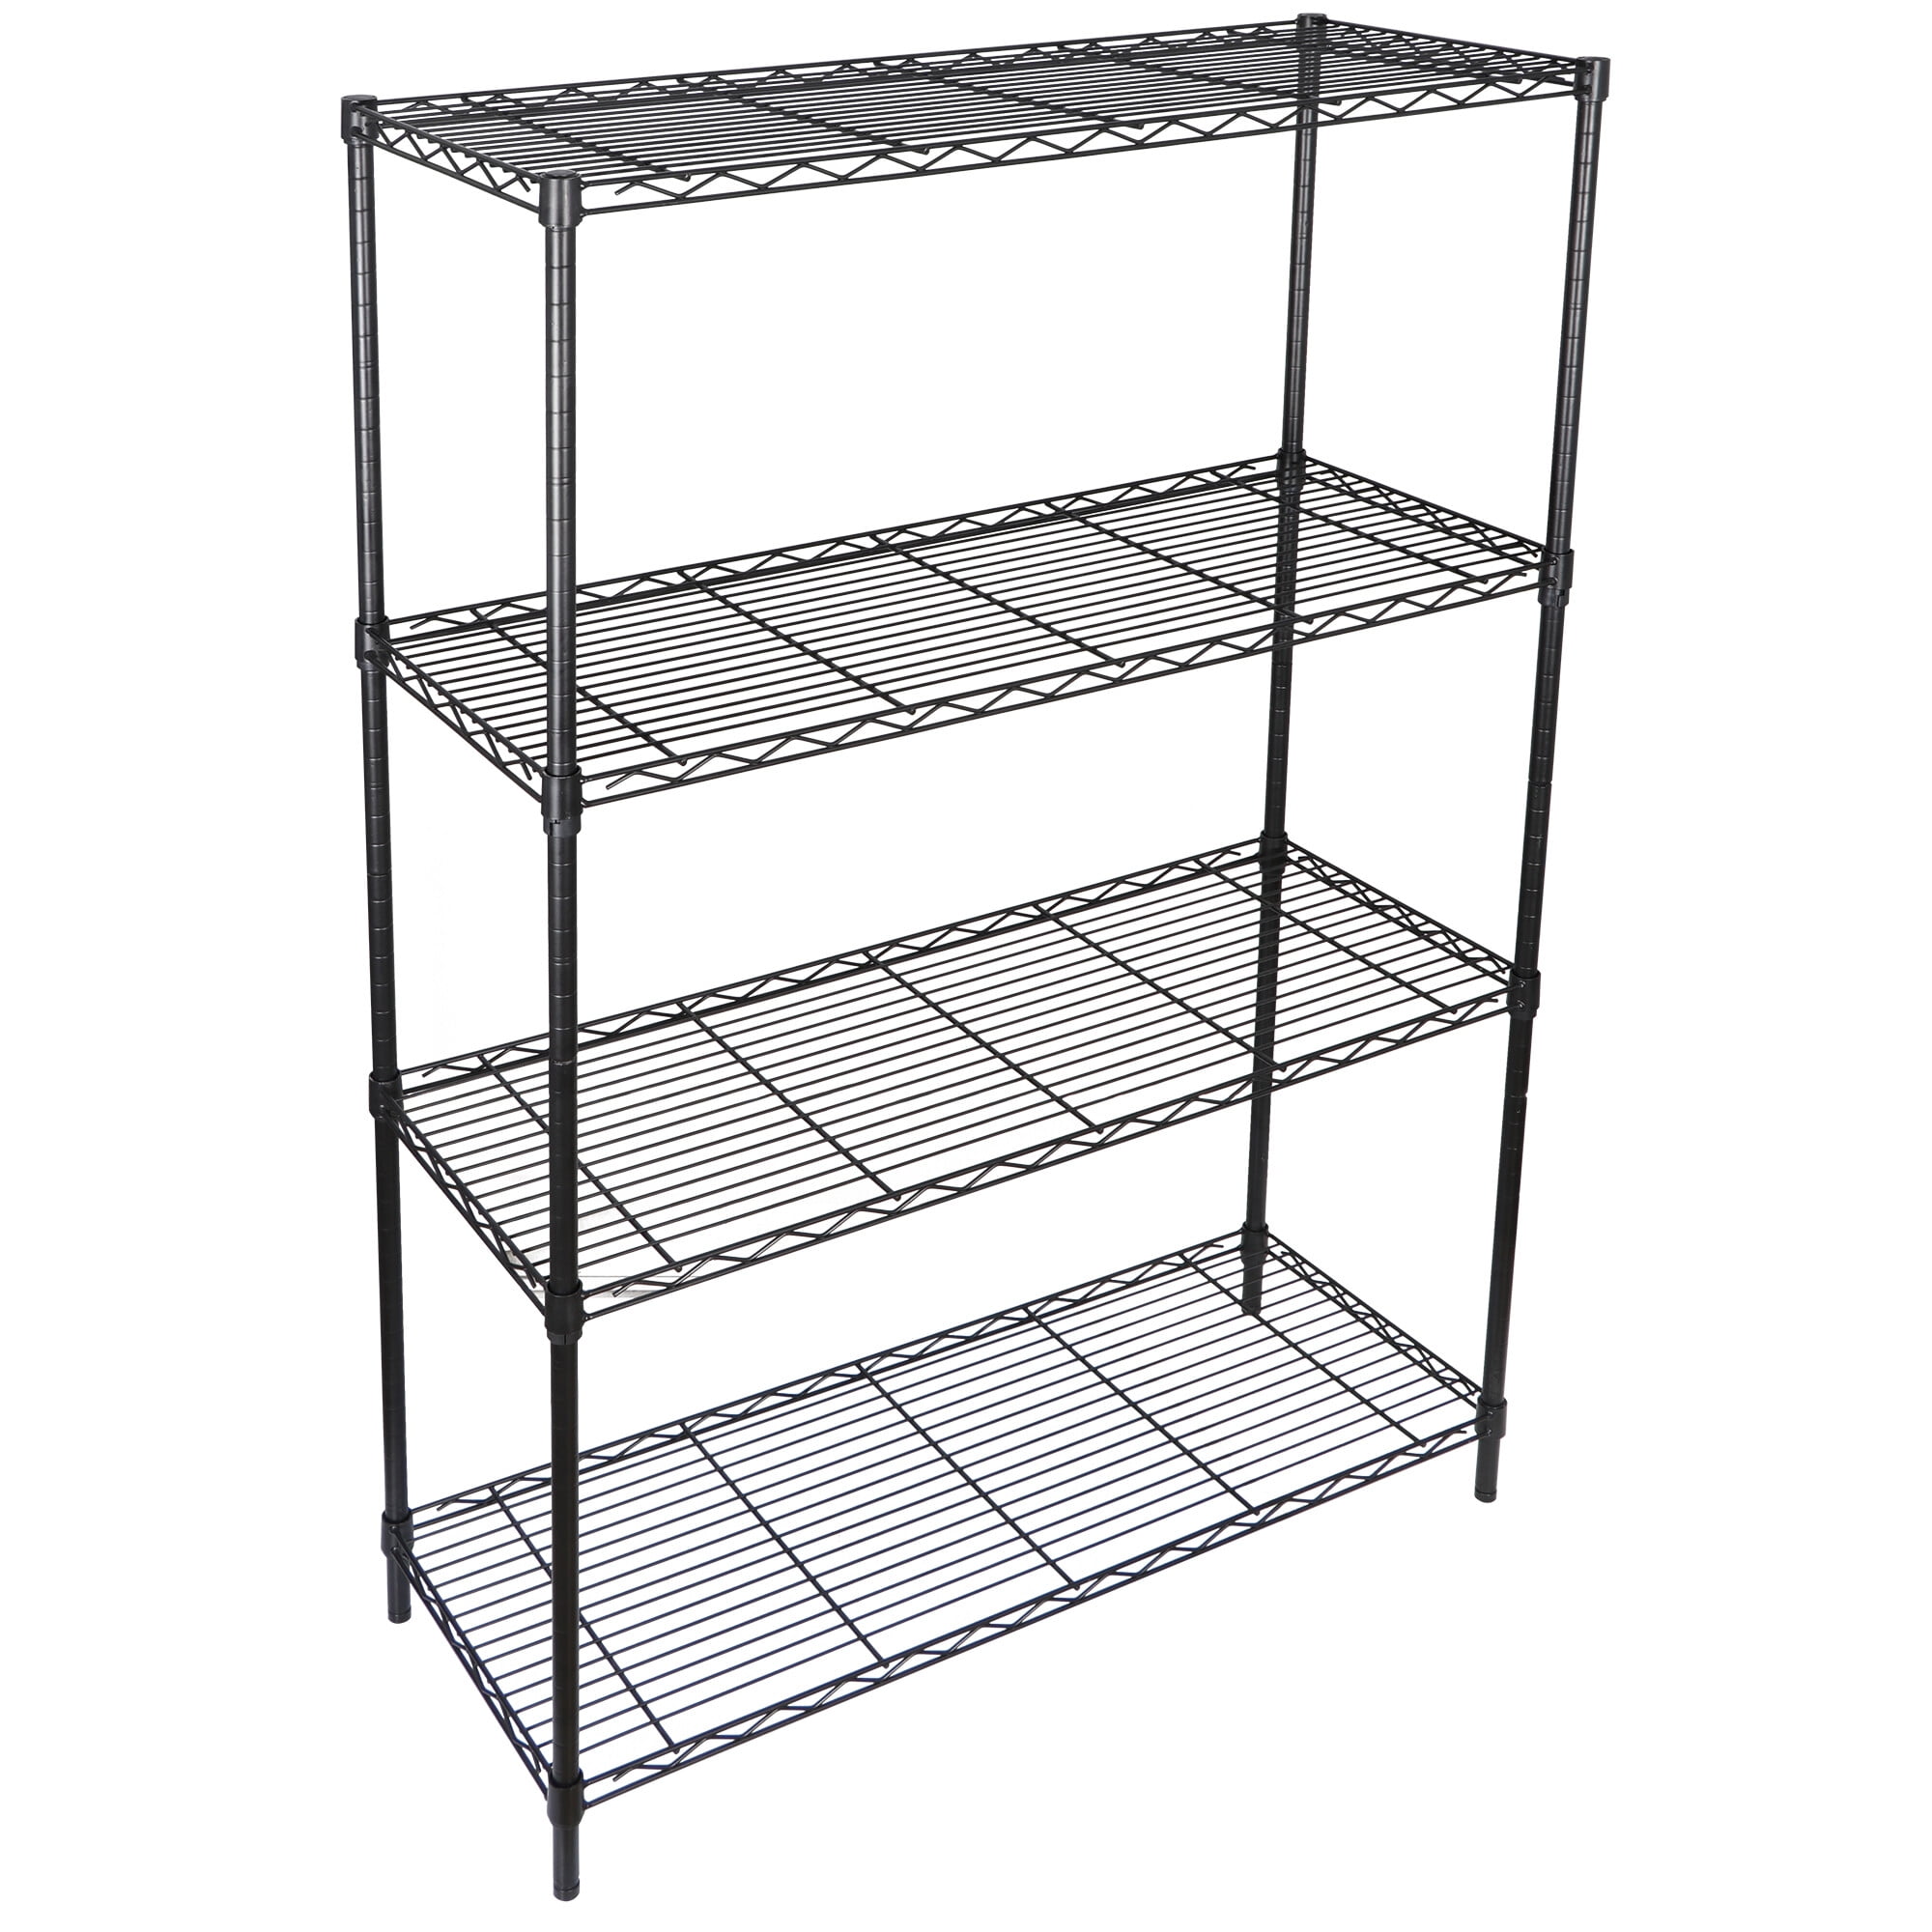 FUNKOL 3-Tier Silver Kitchen Shelf Simple Deluxe Heavy Duty Steel Storage Shelf Unit Multifunctional Cart